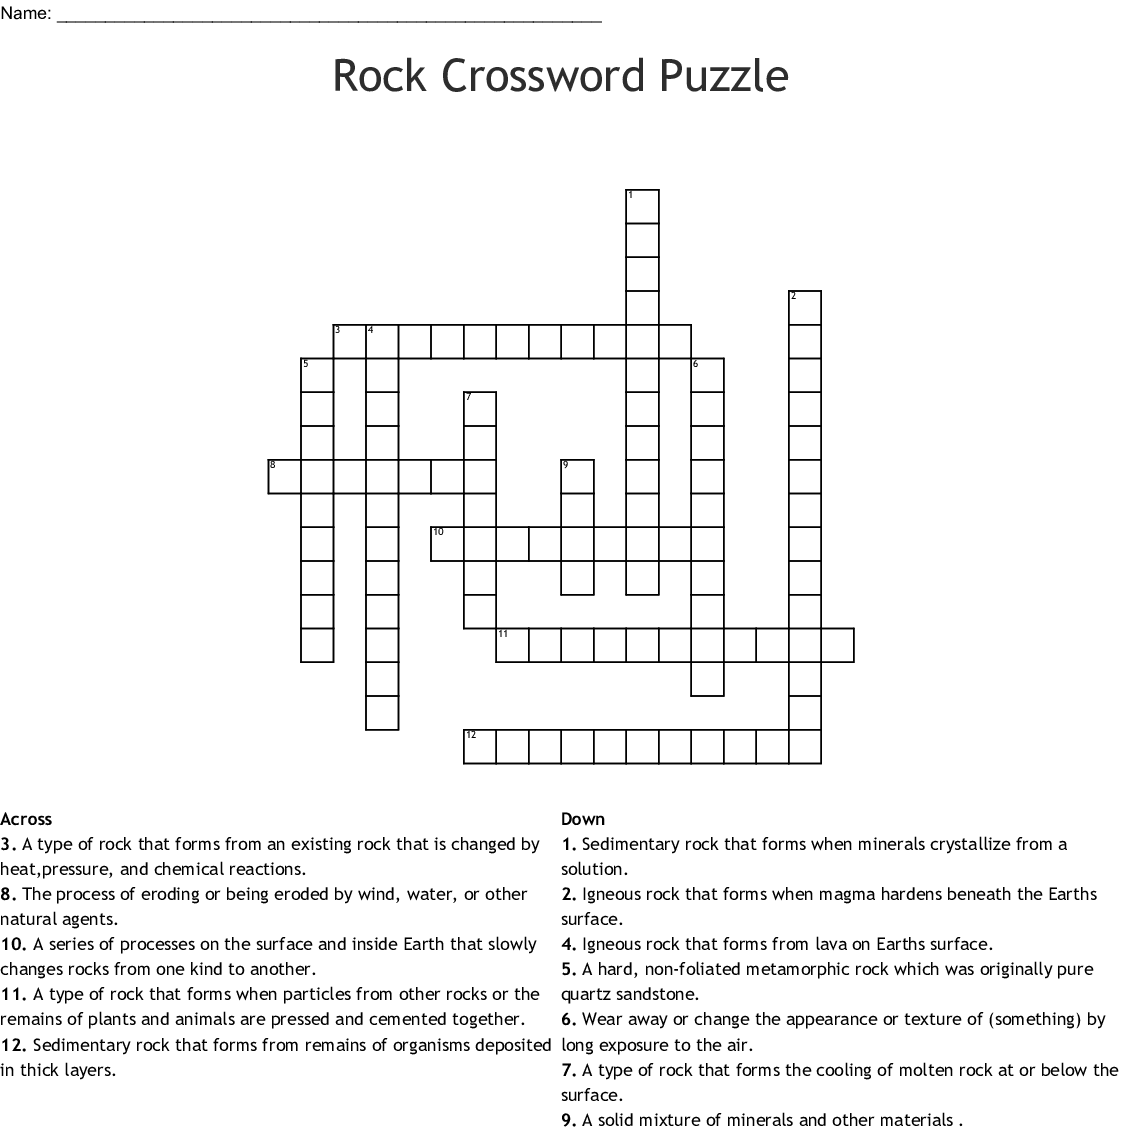 Rock Crossword Puzzle WordMint - Easy Classic Rock And Roll Crossword Online